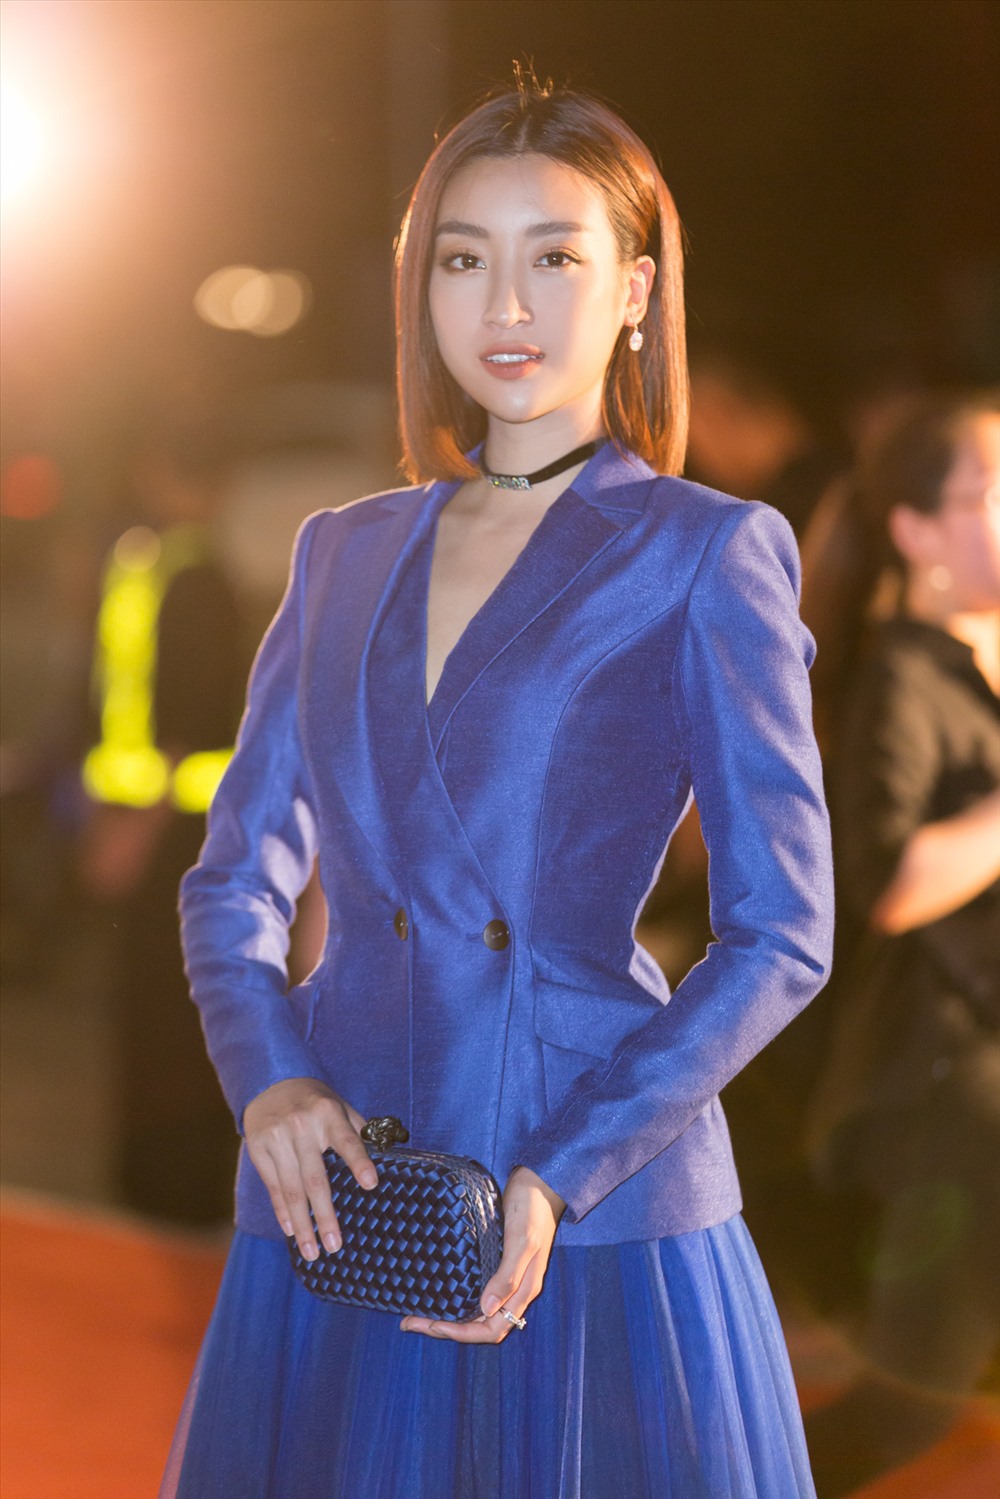 Hoa hậu Đỗ Mỹ Linh quyền lực và đầy cuốn hút khi lựa chọn khoác lên mình chiếc đầm màu xanh sang trọng, phá cách kết hợp với vest cùng màu. Ảnh: MWVN.